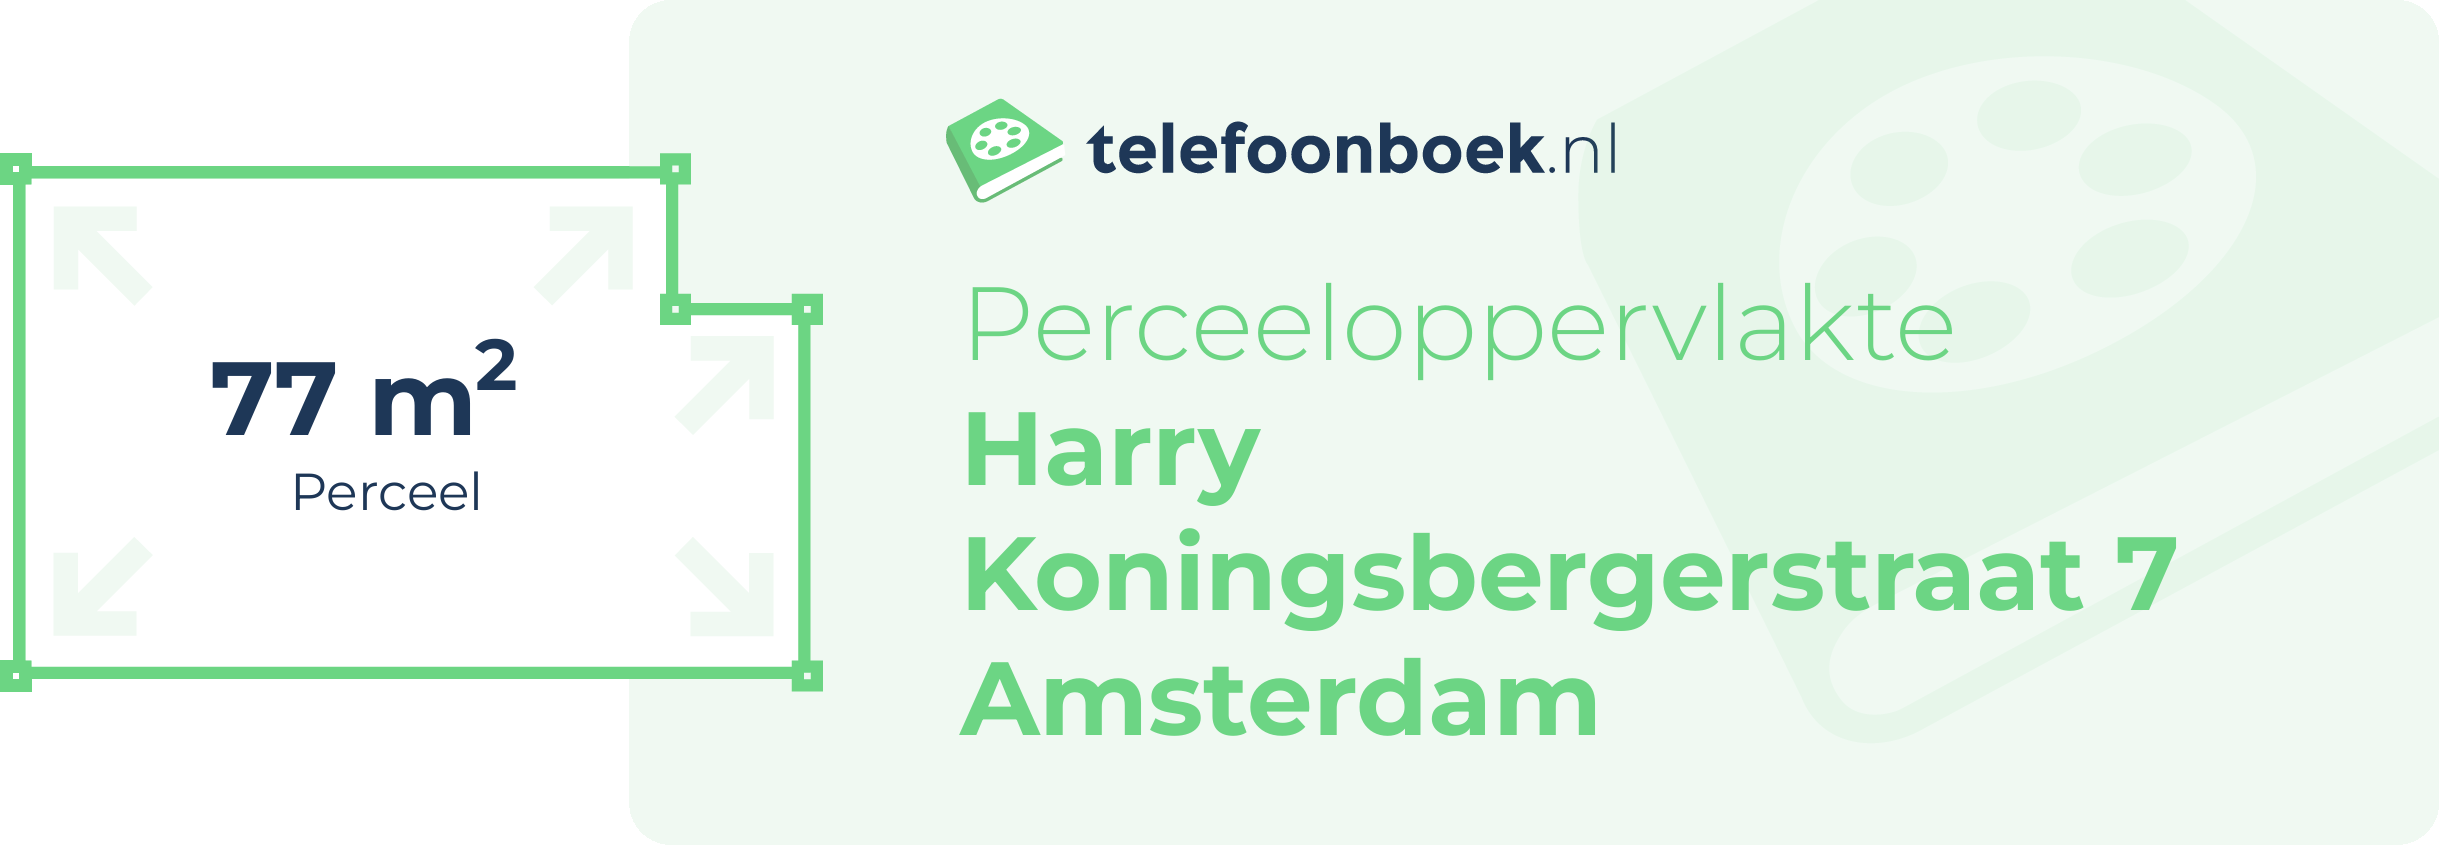 Perceeloppervlakte Harry Koningsbergerstraat 7 Amsterdam